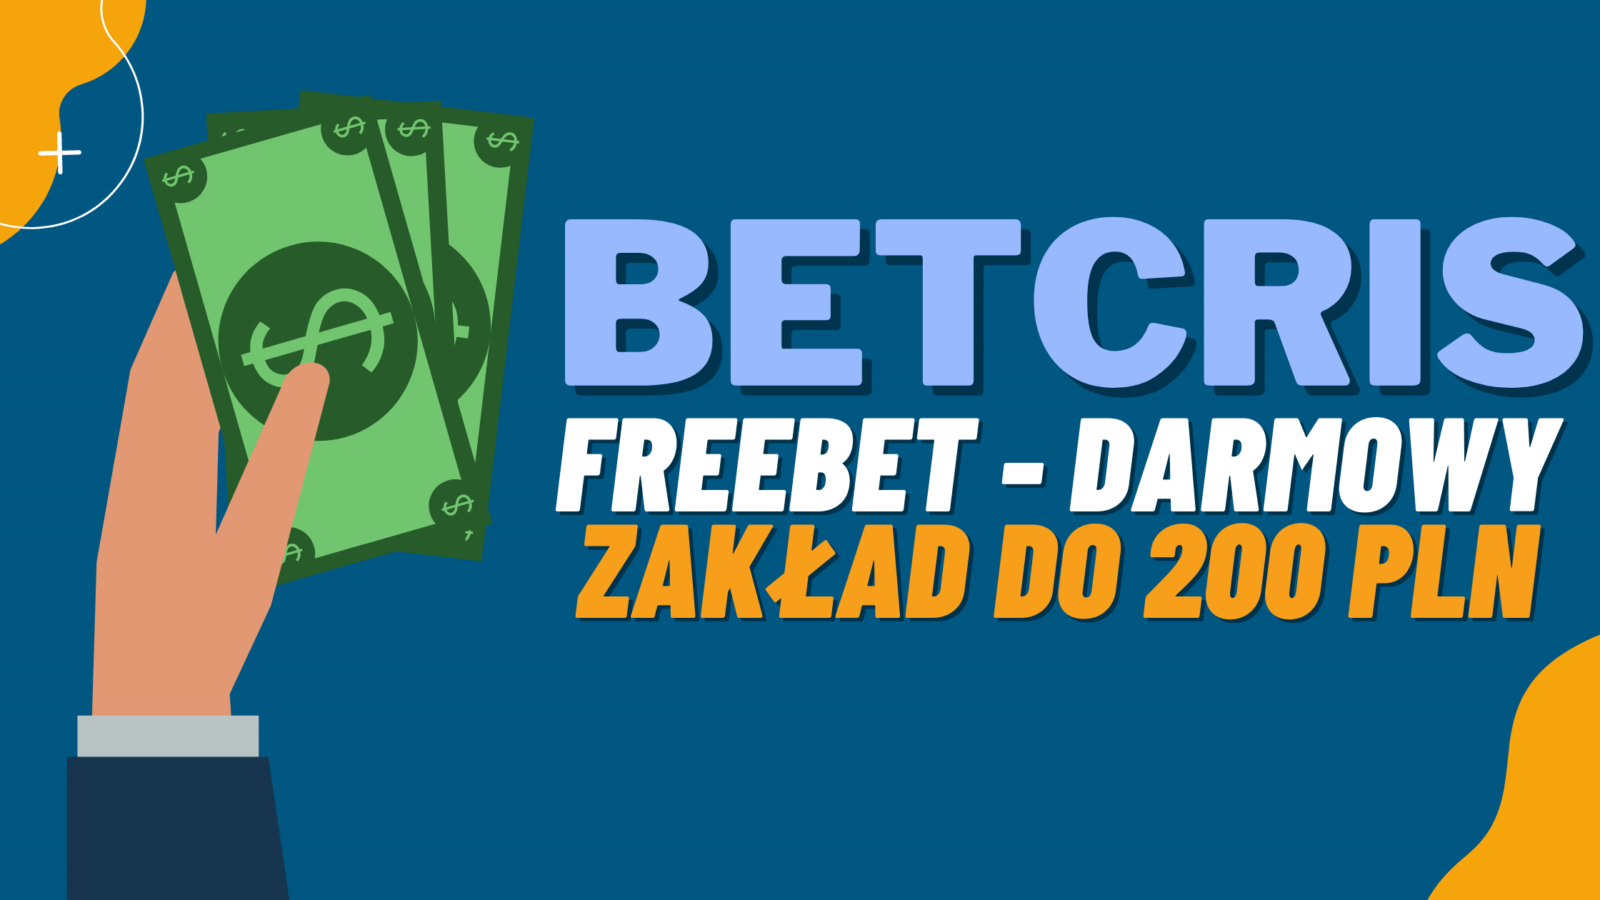 Legalny bukmacher Betcris freebet czyli darmowy zakład do 200 PLN